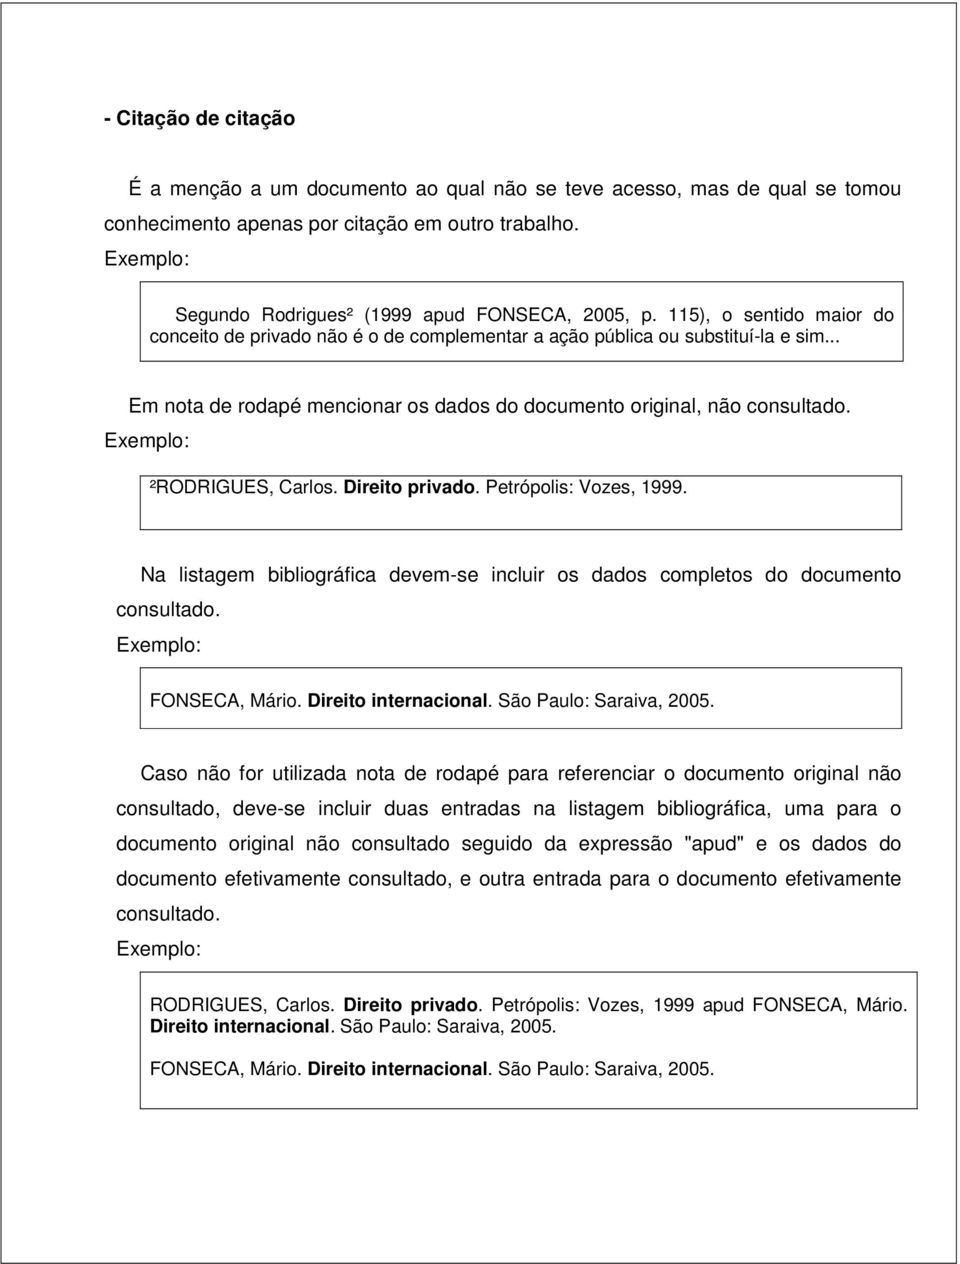 .. Em nota de rodapé mencionar os dados do documento original, não consultado. Exemplo: ²RODRIGUES, Carlos. Direito privado. Petrópolis: Vozes, 1999.